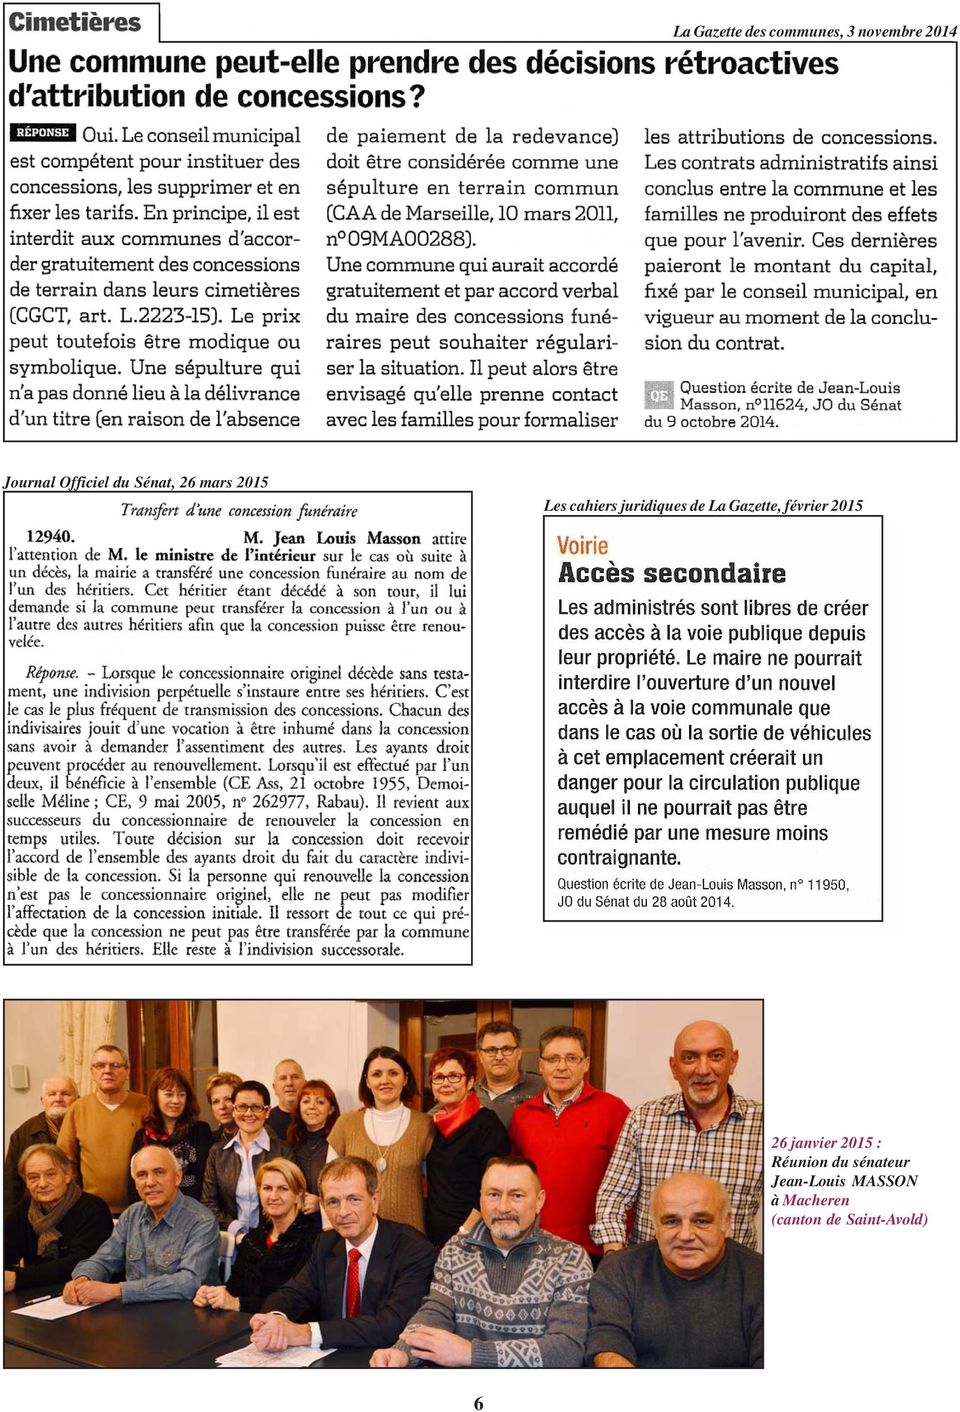 de La Gazette, février 2015 26 janvier 2015 : Réunion